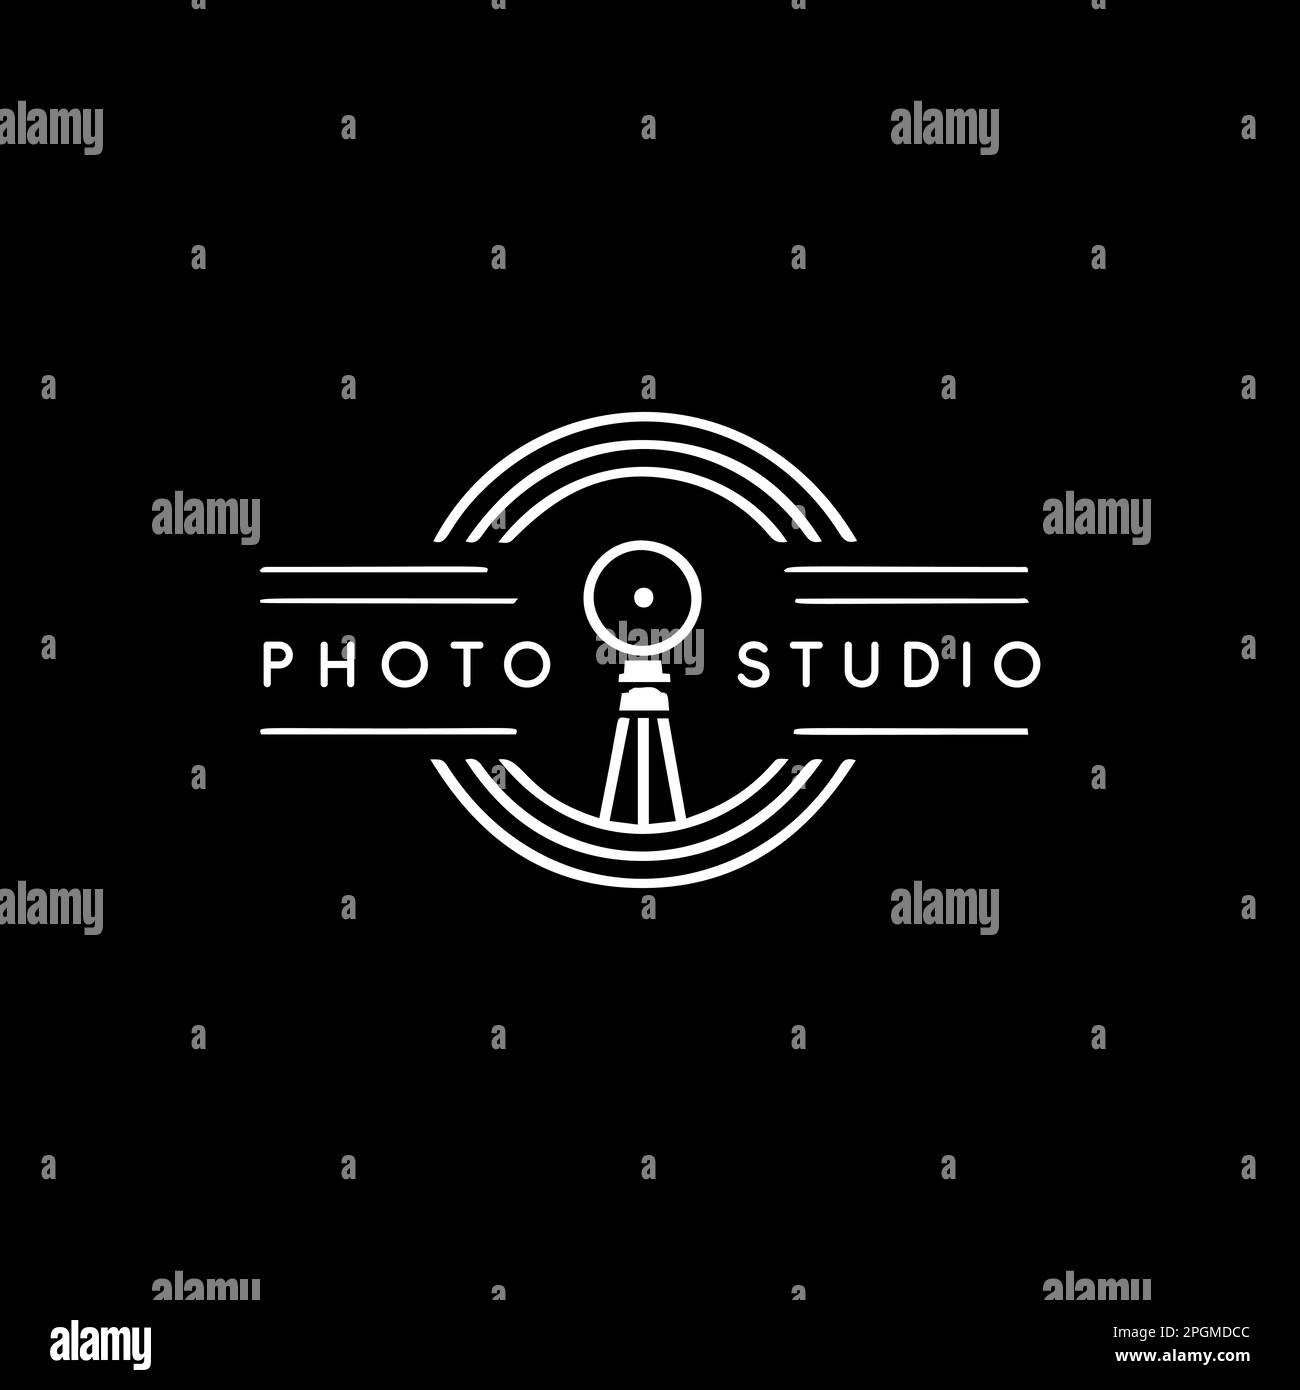 Photo studio rétro emblème vintage. Concept de logo de photographe linéaire blanc sur fond noir. Illustration vectorielle. Illustration de Vecteur